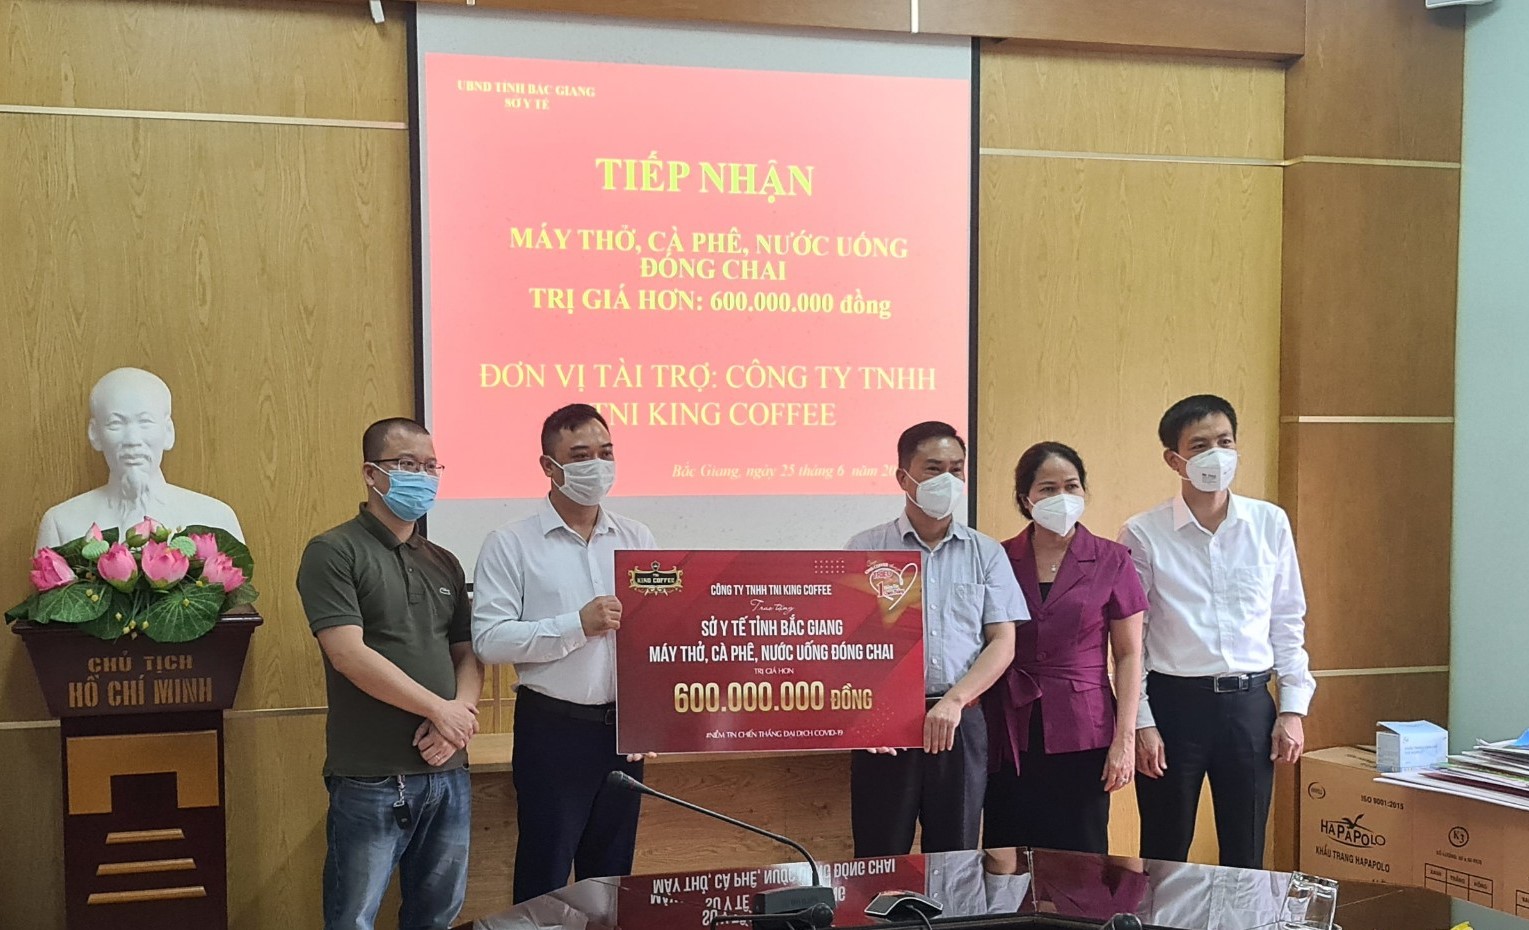 TNI King Coffee trao tặng cà phê, nước suối, máy thở cho y bác sĩ cứu chữa bệnh nhân Covid-19 tỉnh Bắc Giang - Ảnh 4.